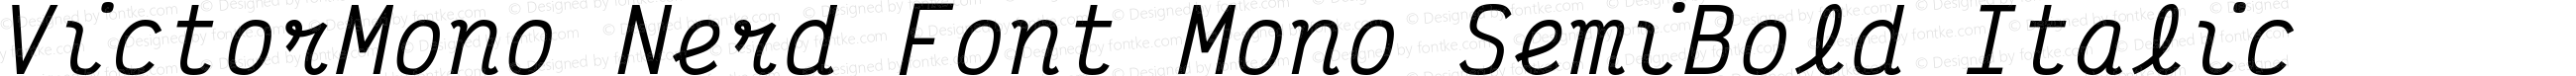 Victor Mono SemiBold Italic Nerd Font Complete Mono